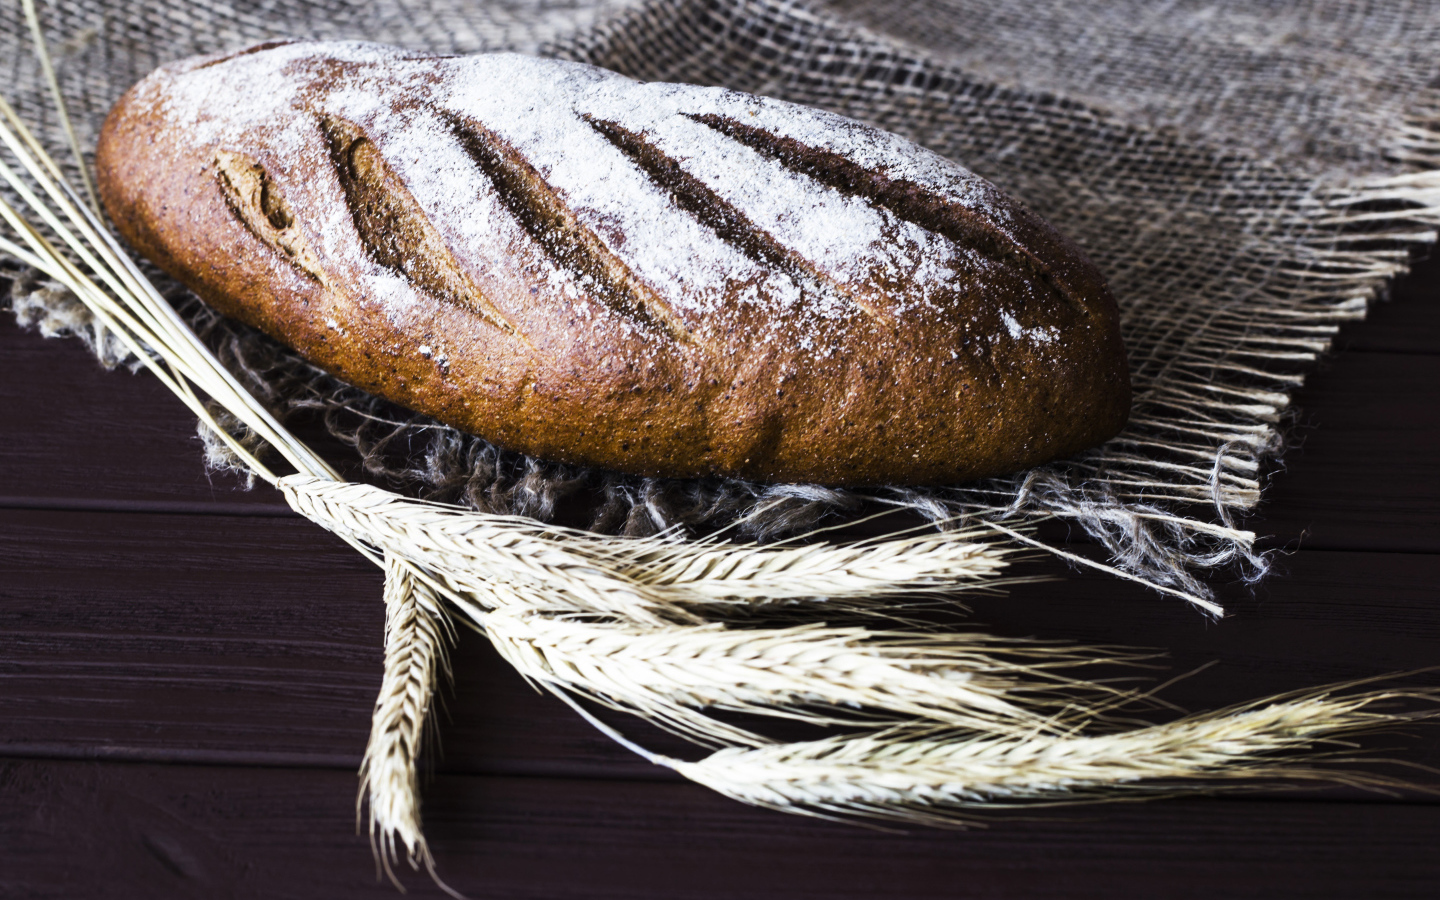 Буханка свежего хлеба на столе с колосьями пшеницы